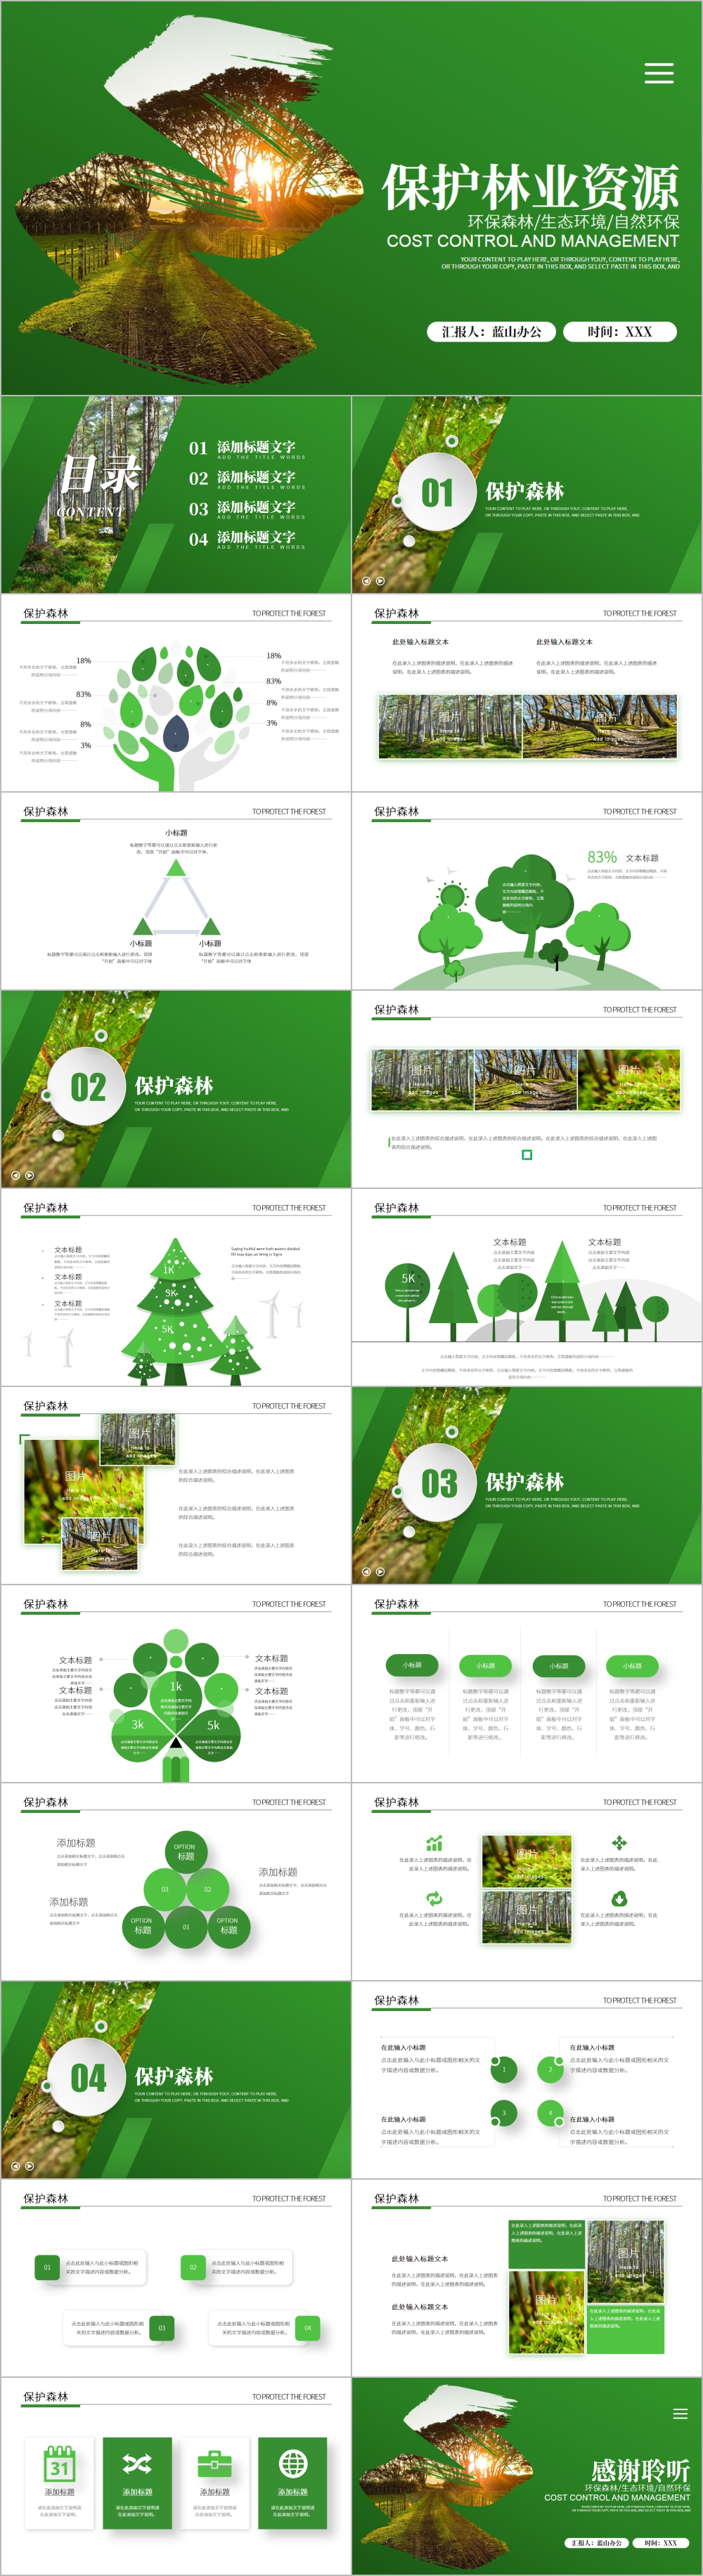 绿色保护林业资源ppt模板